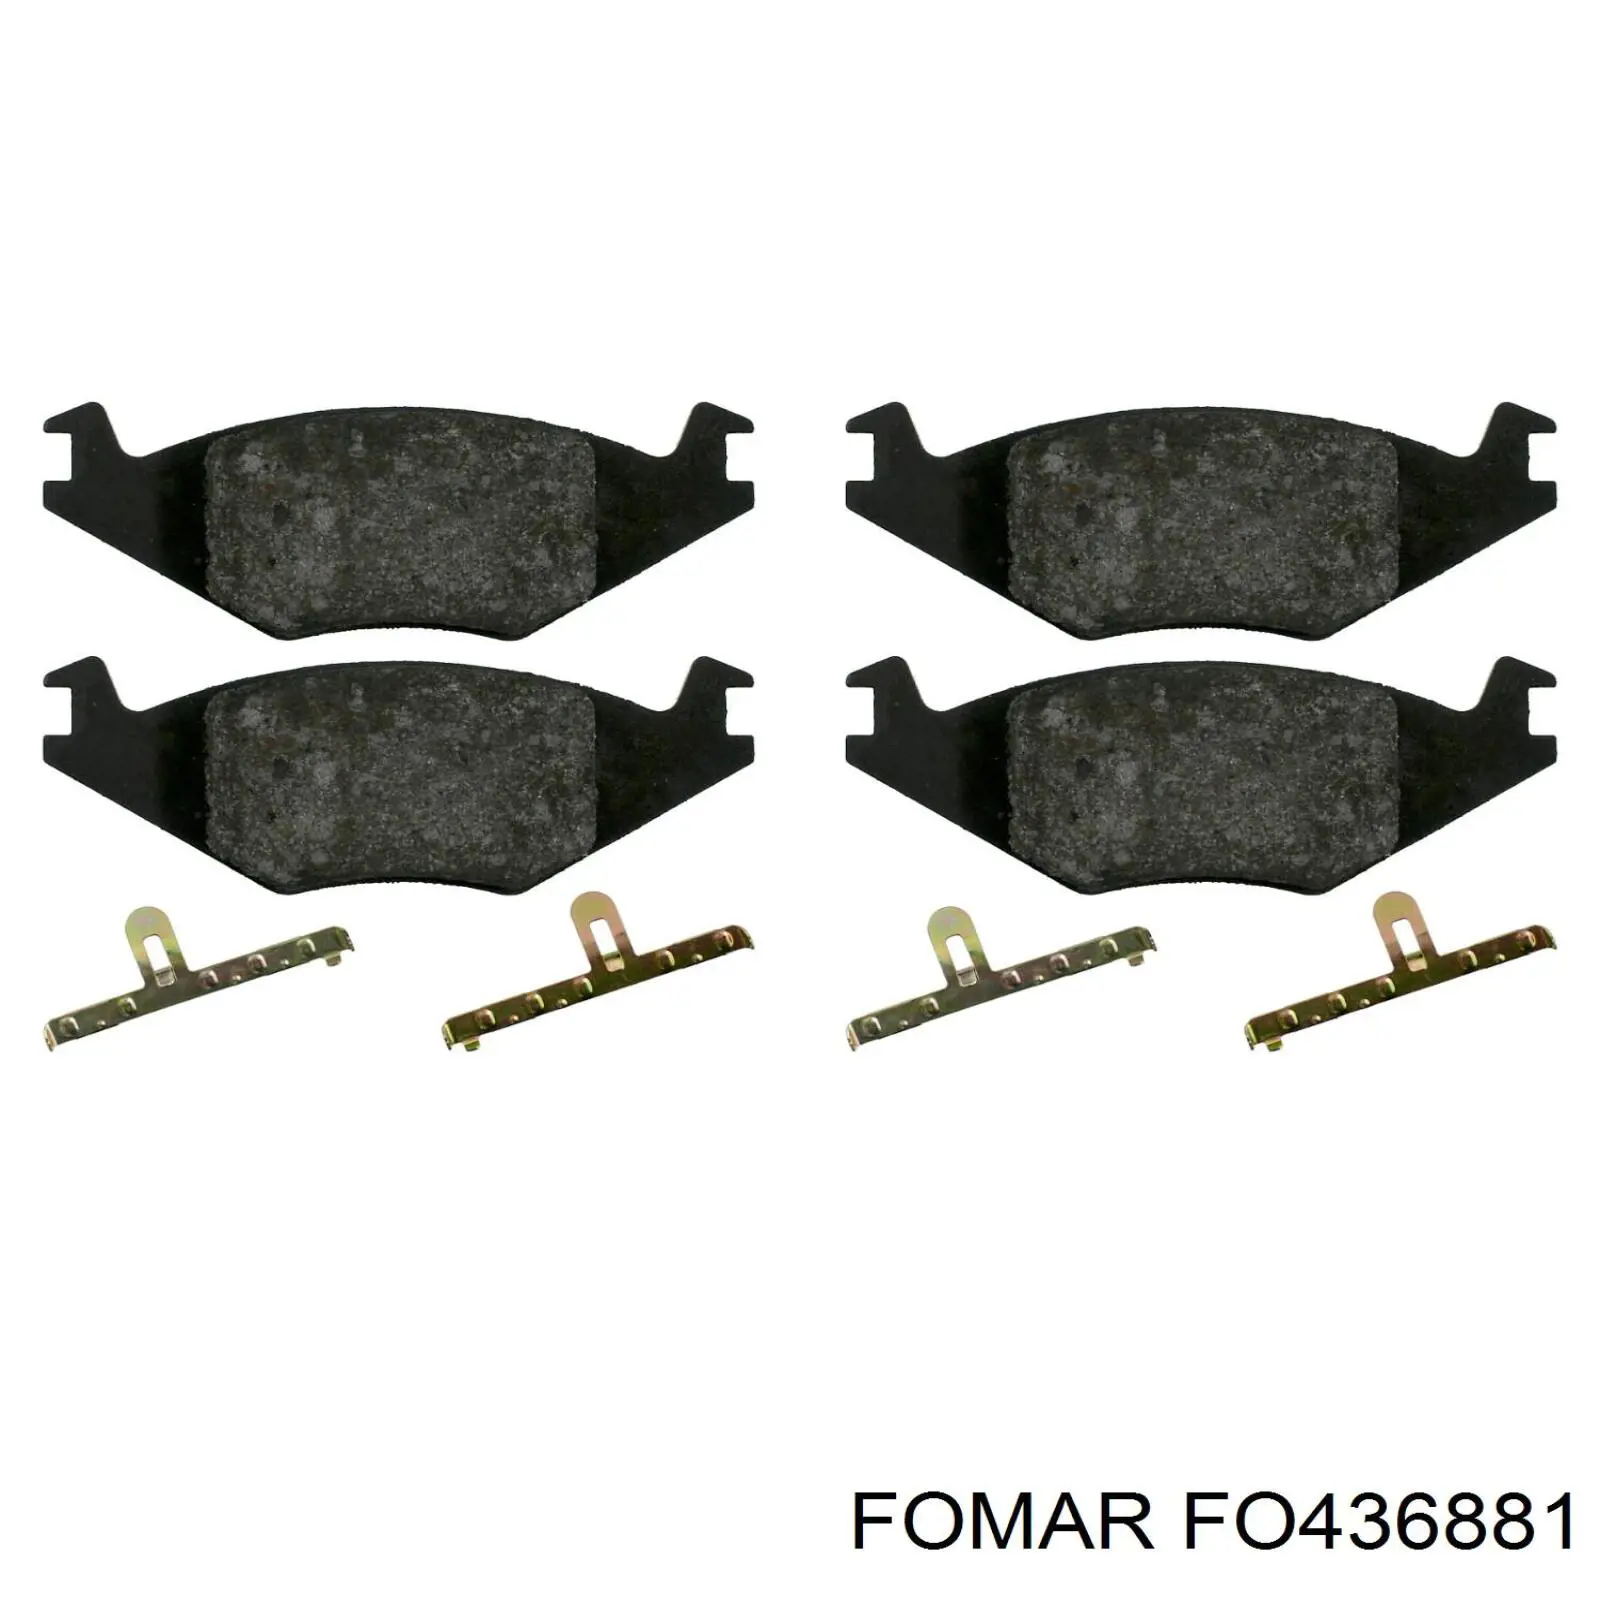 FO 436881 Fomar Roulunds колодки тормозные передние дисковые